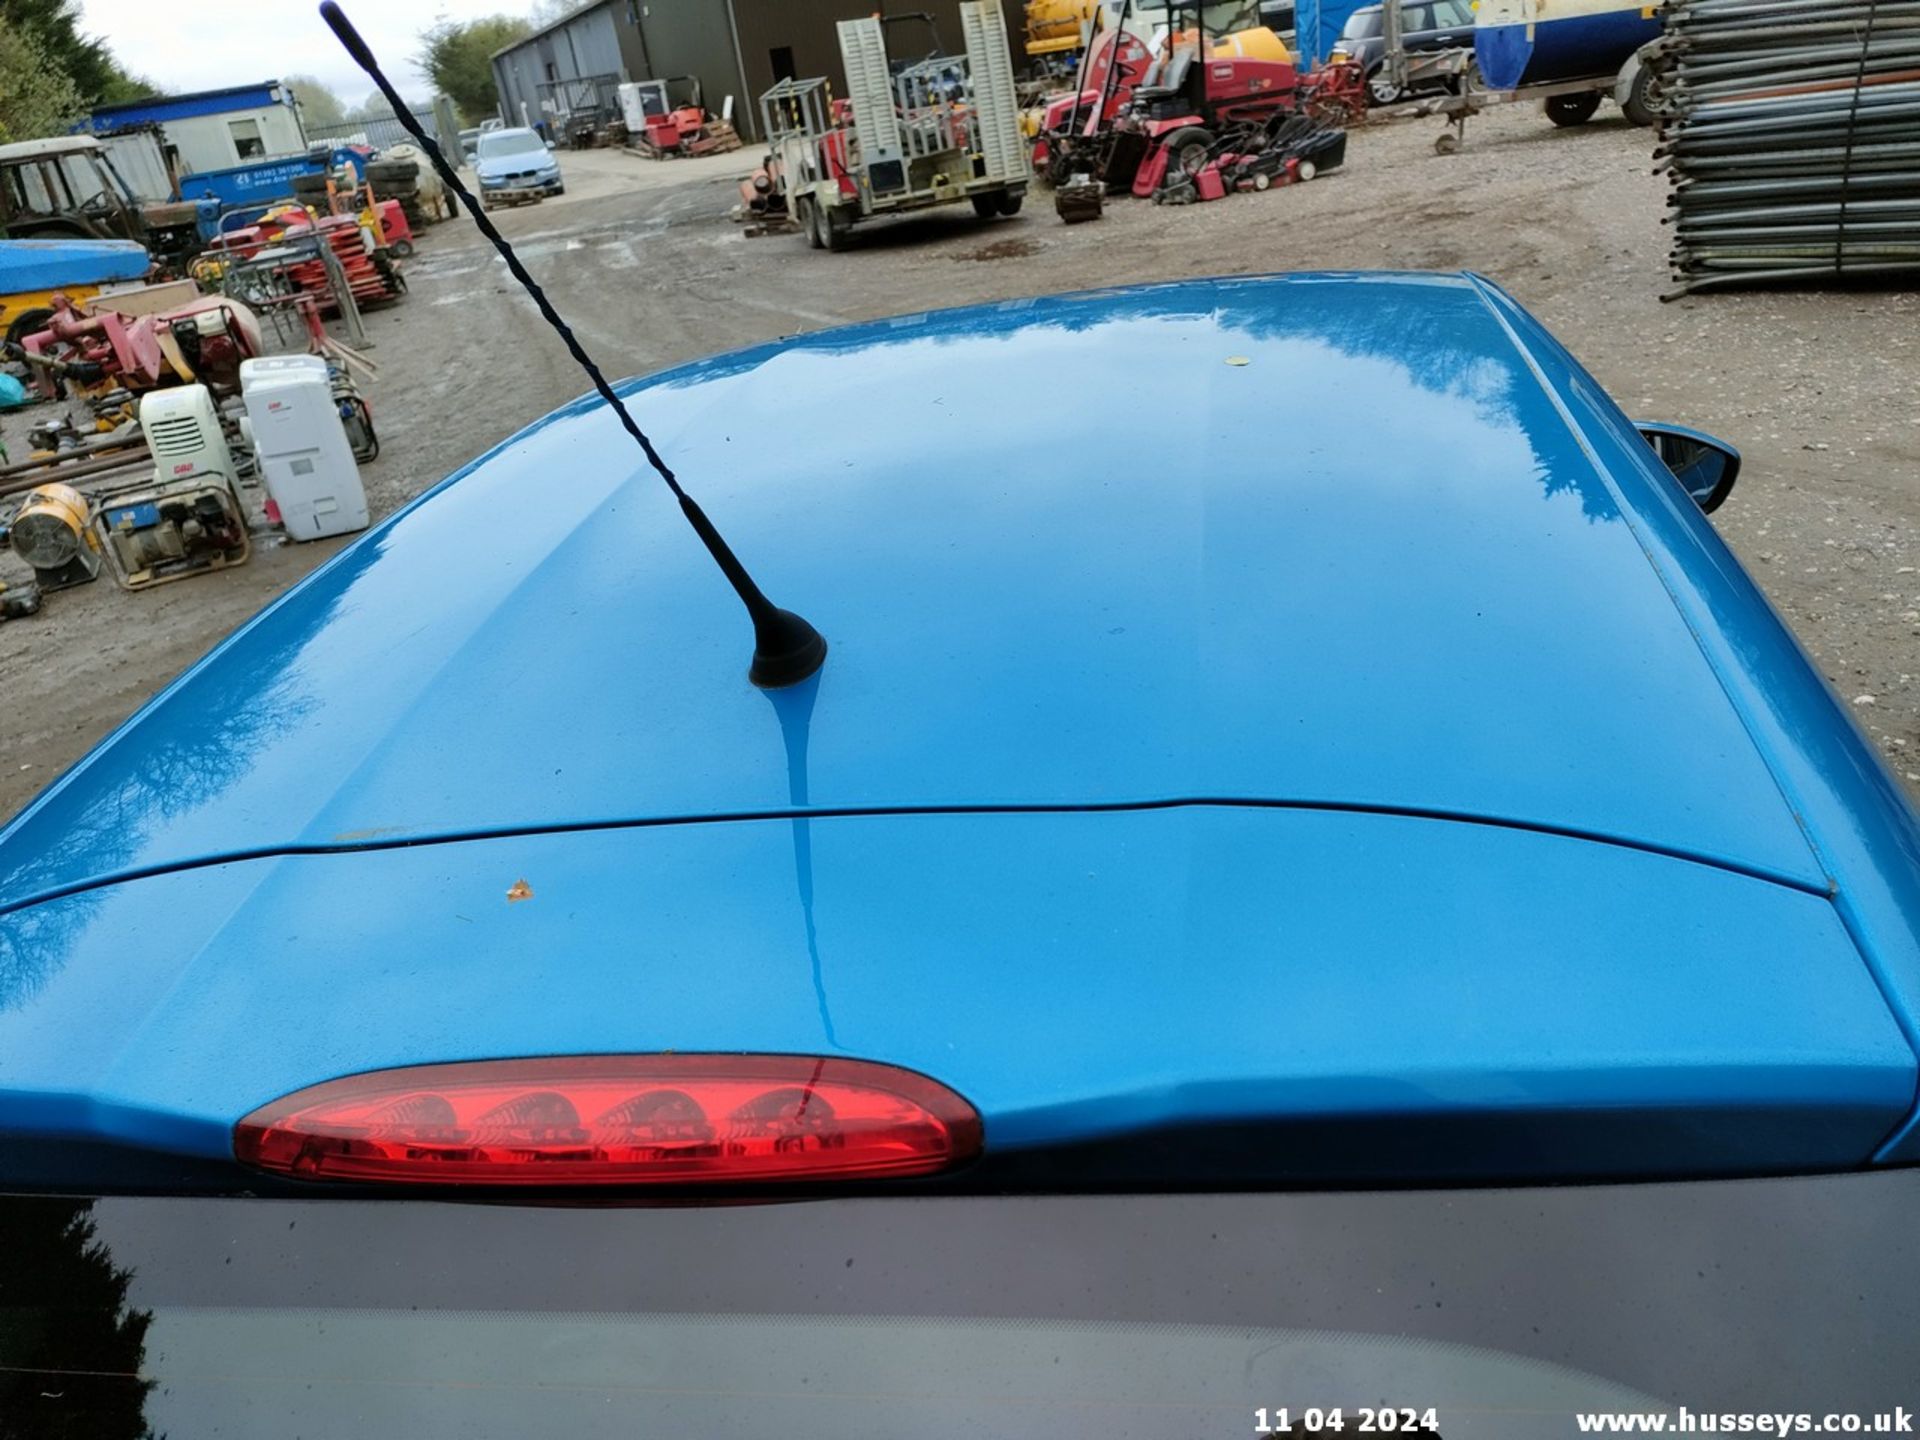 13/62 PEUGEOT 208 ACCESS PLUS - 1199cc 5dr Hatchback (Blue, 83k) - Image 39 of 67